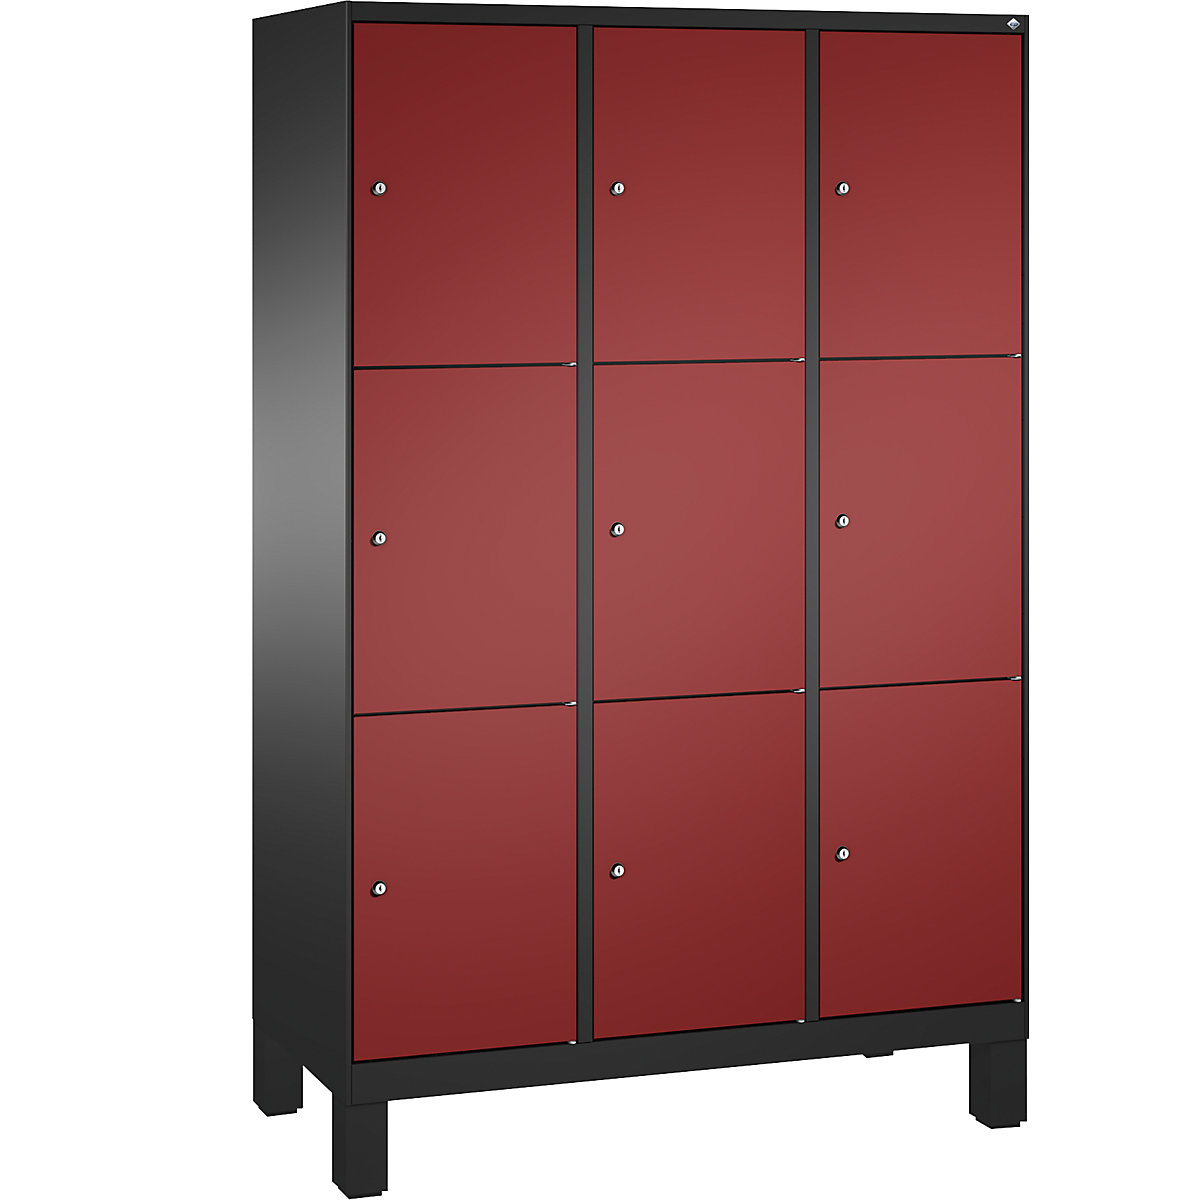 Armoire à casiers sur pieds EVOLO – C+P, 3 compartiments, 3 casiers chacun, largeur compartiments 400 mm, gris noir / rouge rubis-4